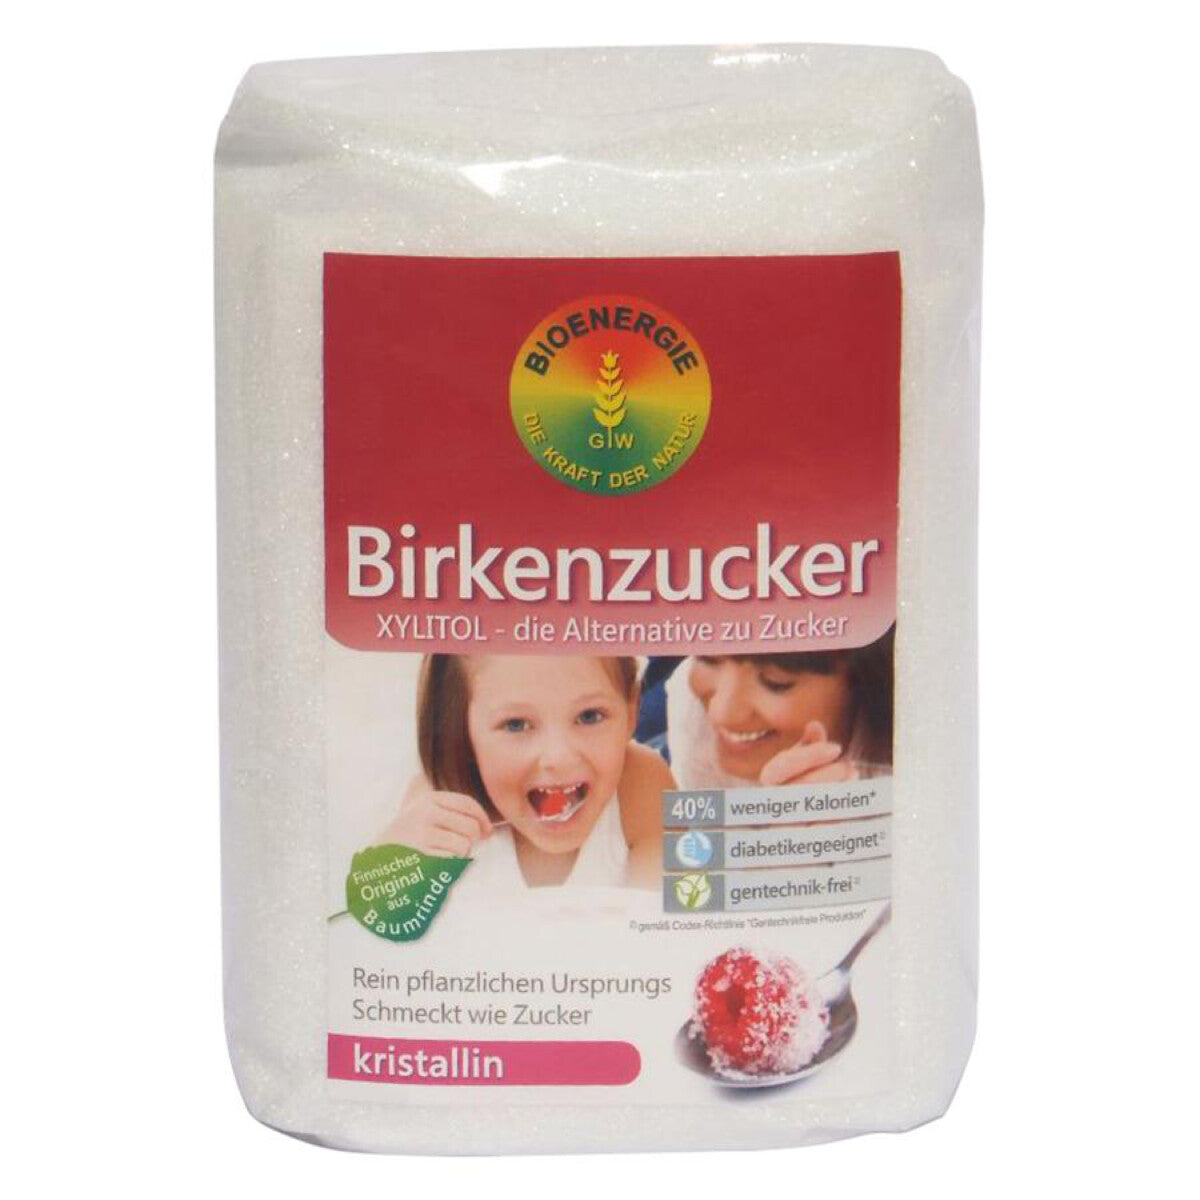 BIOENERGIE WAGNER Birkenzucker (Xylit) - 750 g